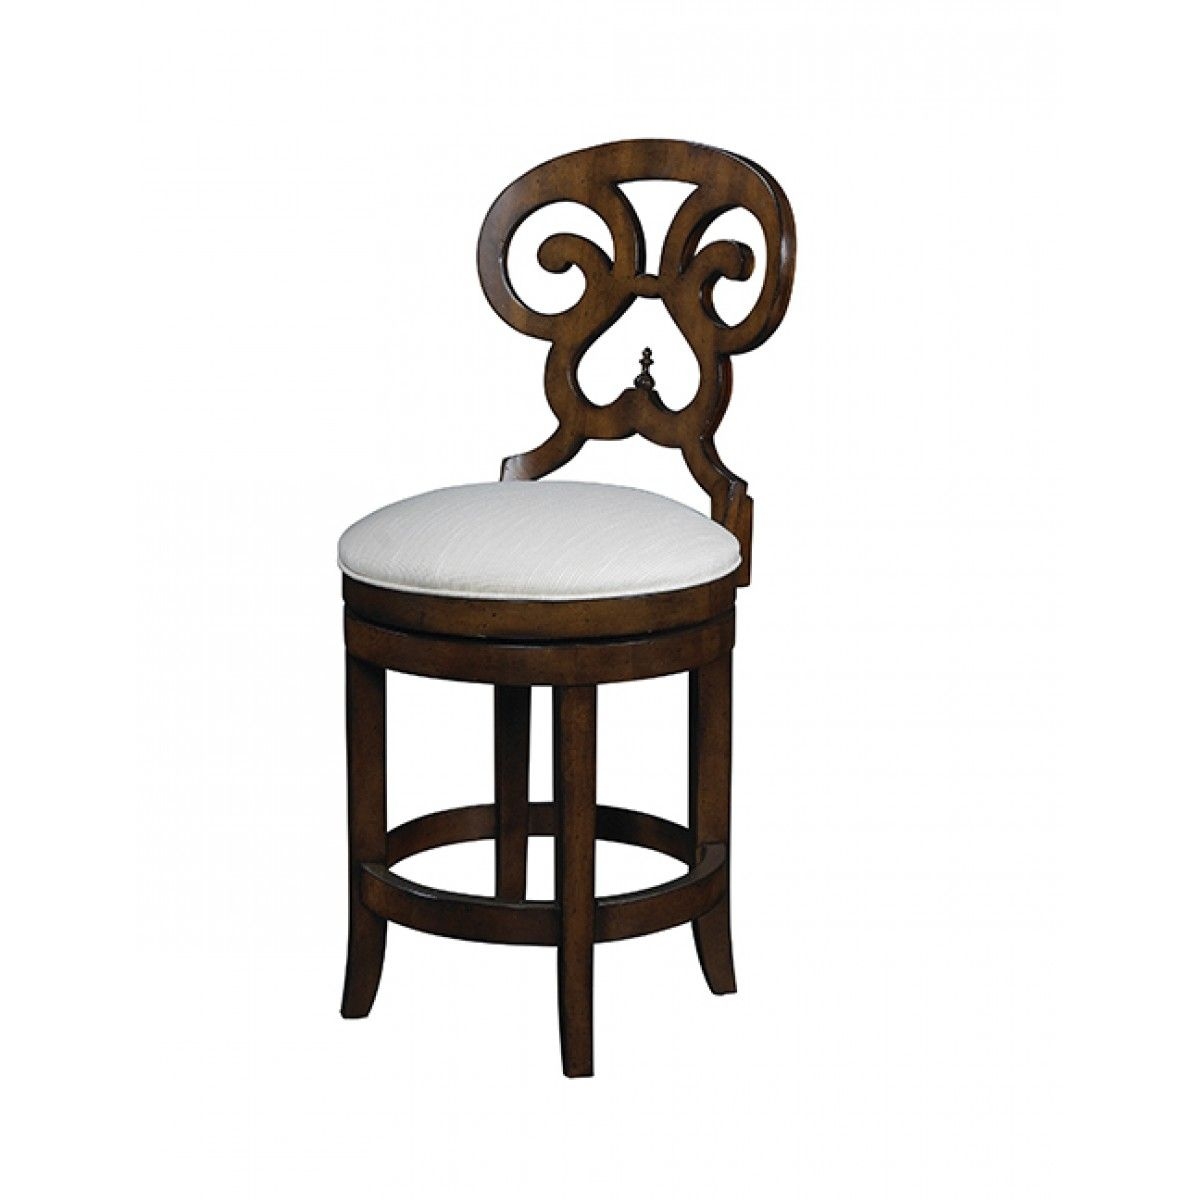 Summer home elegant swivel counter stool